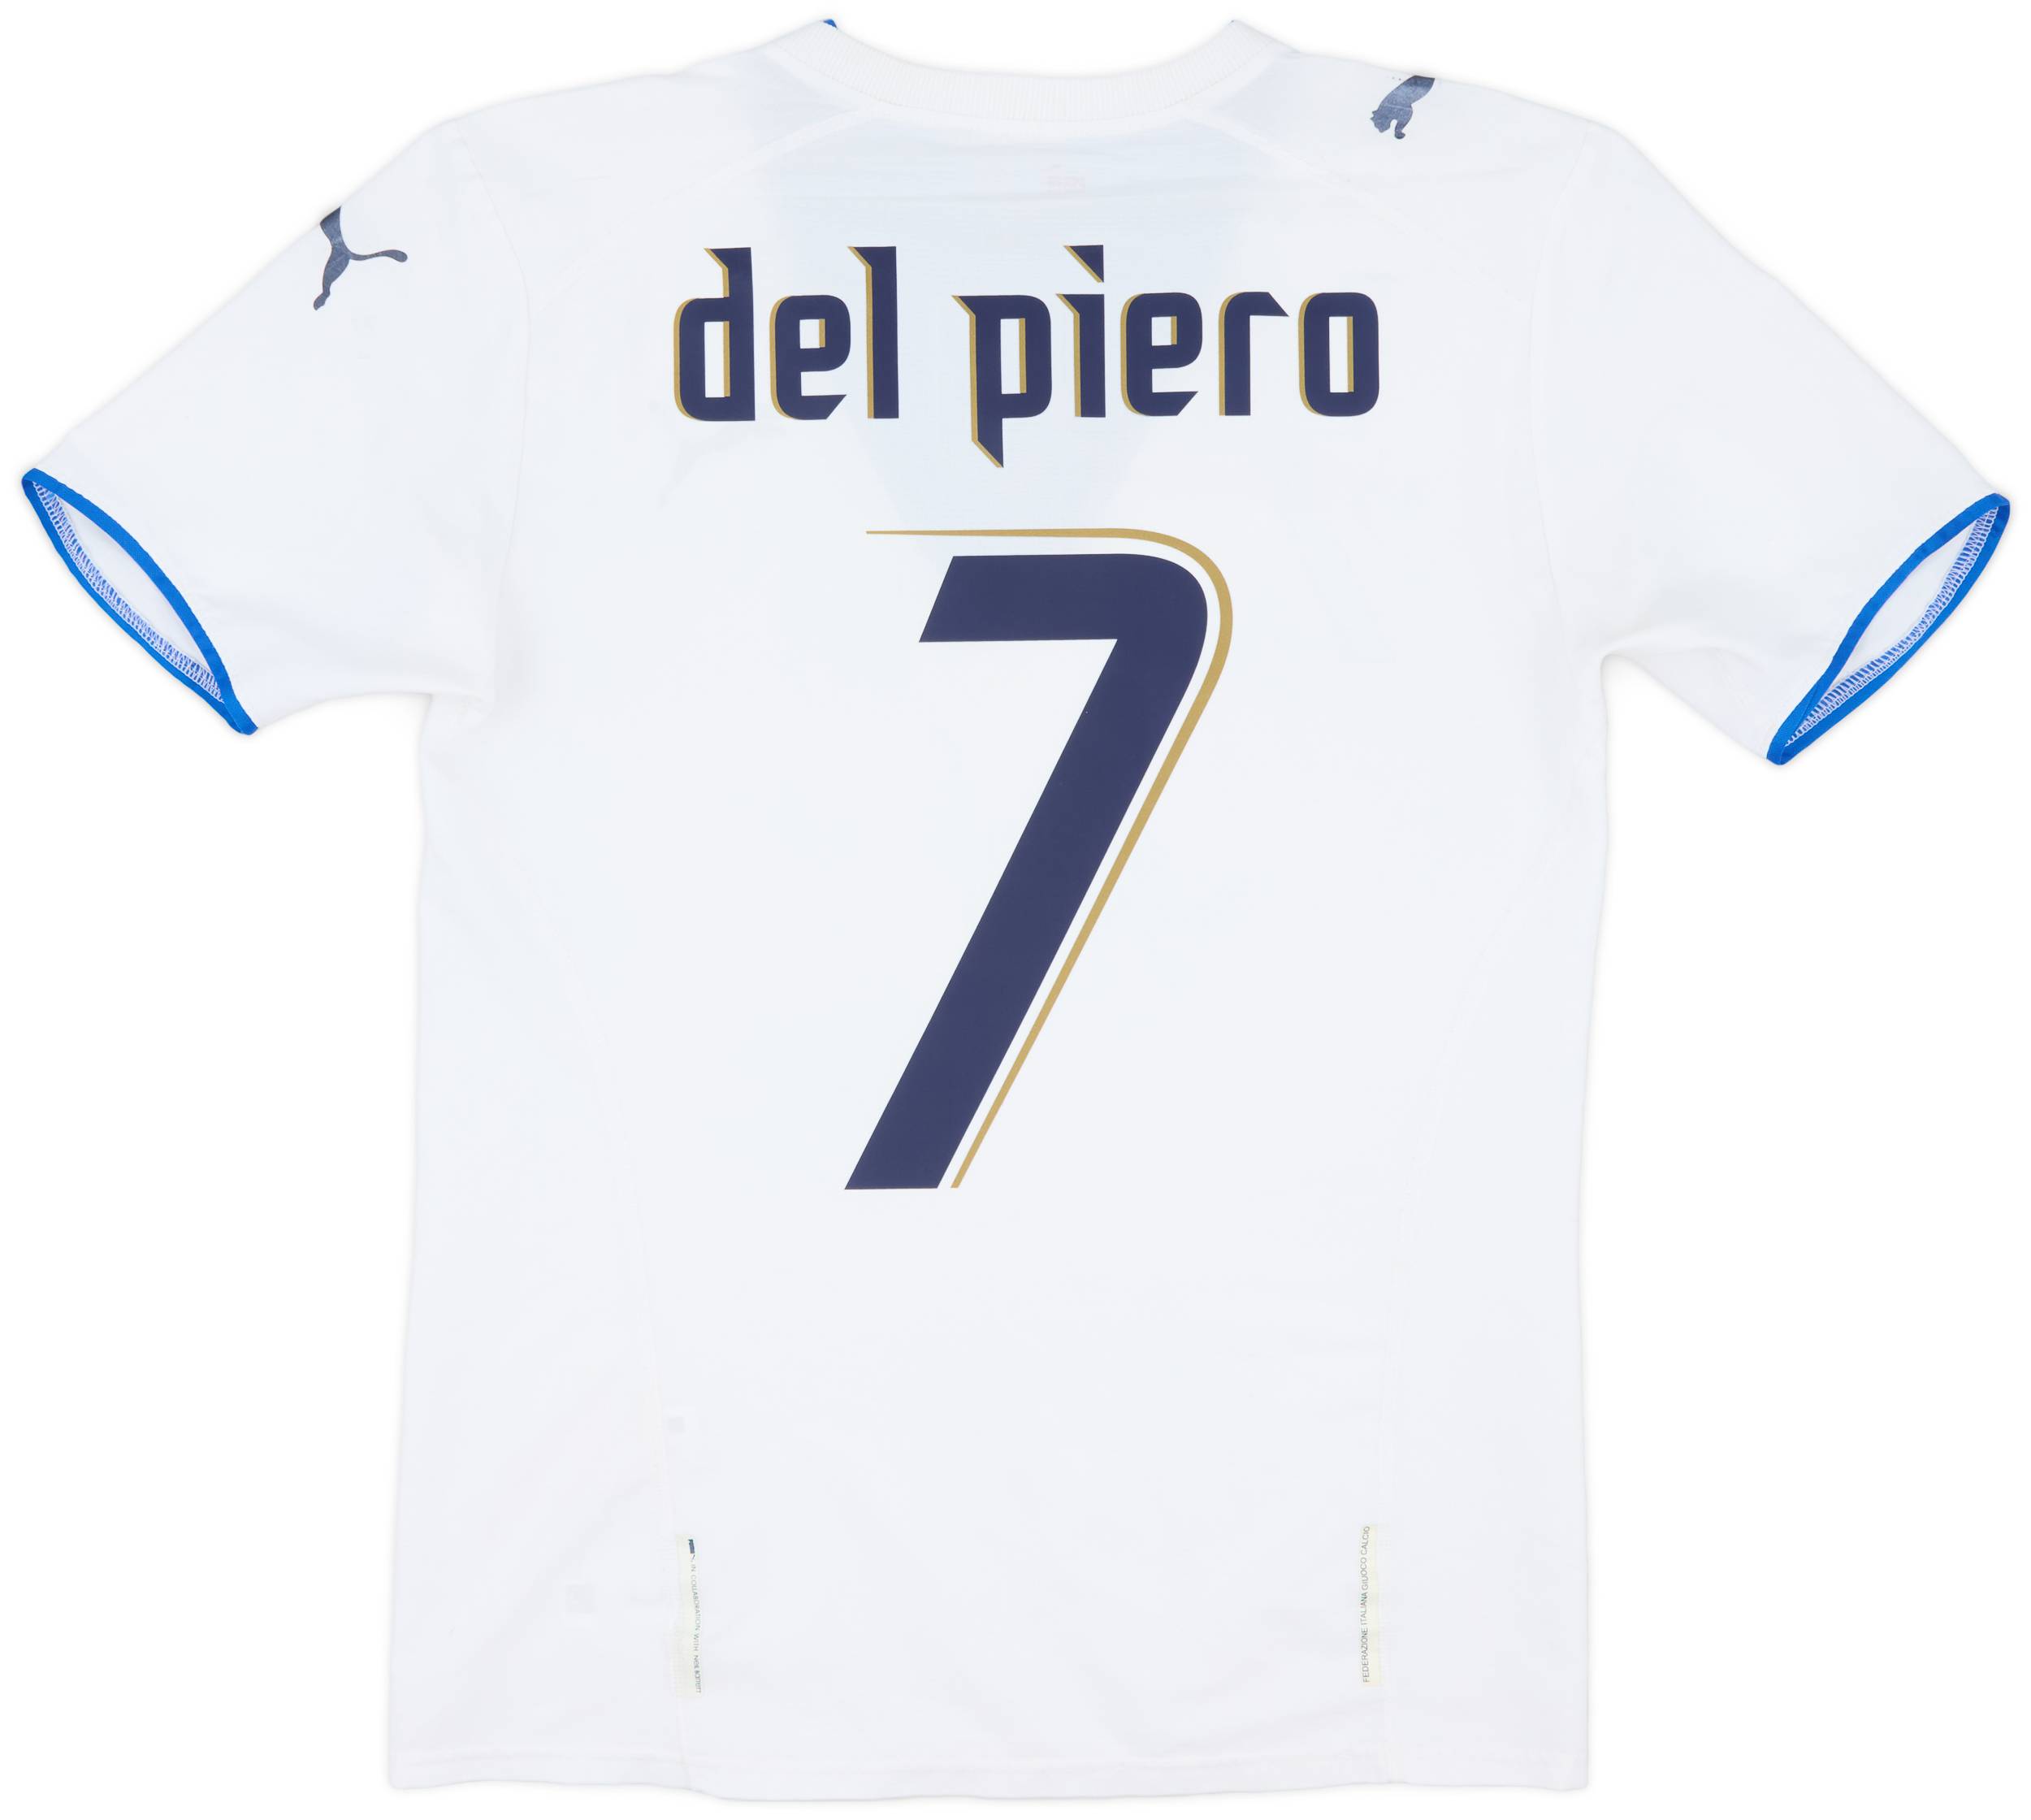 2006 Italy Away Shirt Del Piero #7 - 6/10 - (S)